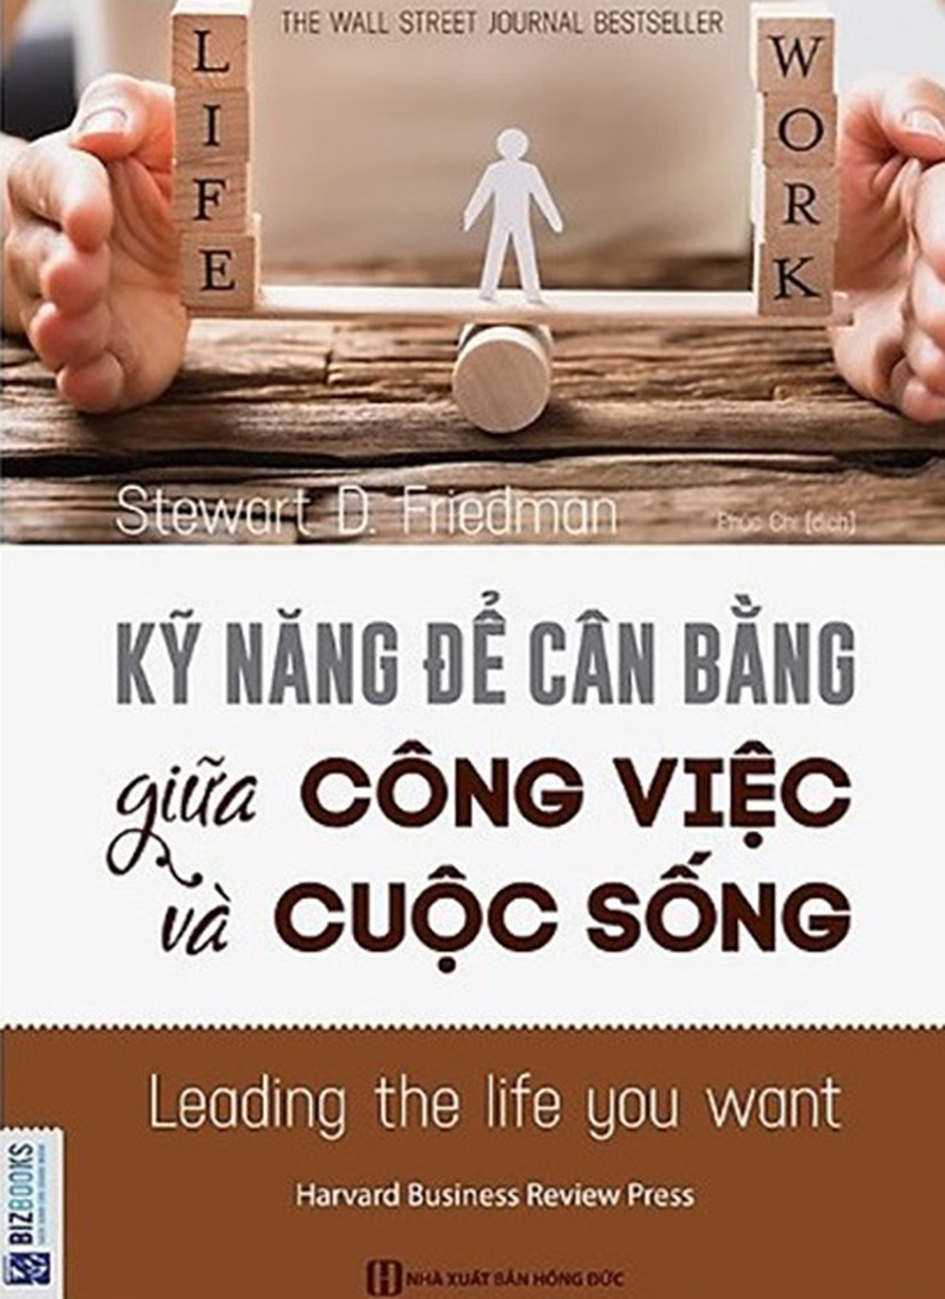 can bang cong viec